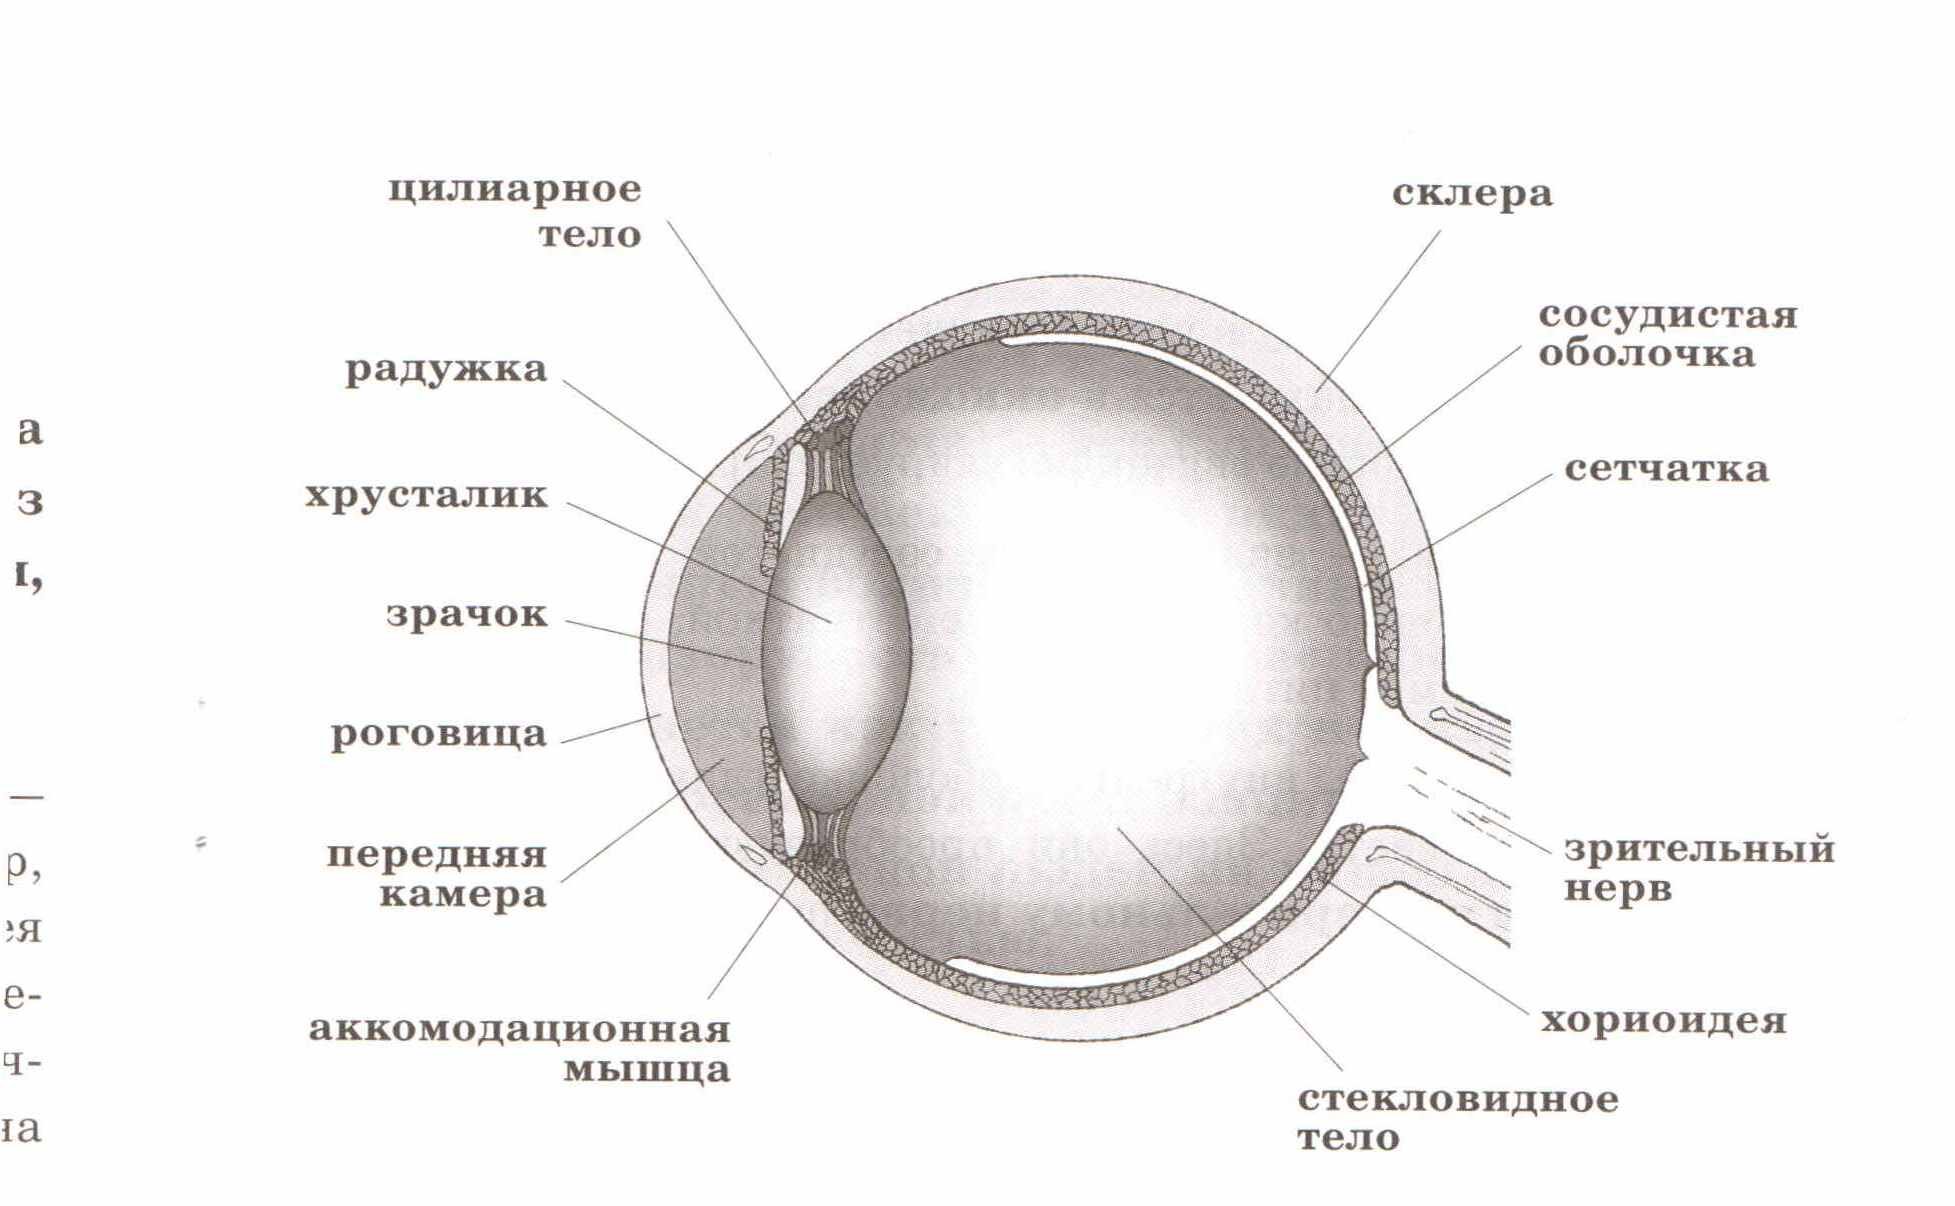 Сетчатка сосудистая оболочка склера. Строение глаза человека схема ЕГЭ. Строение глаза анатомия ЕГЭ. Анатомия строение глаза человека ЕГЭ биология. Схема строения глаза человека ЕГЭ биология.